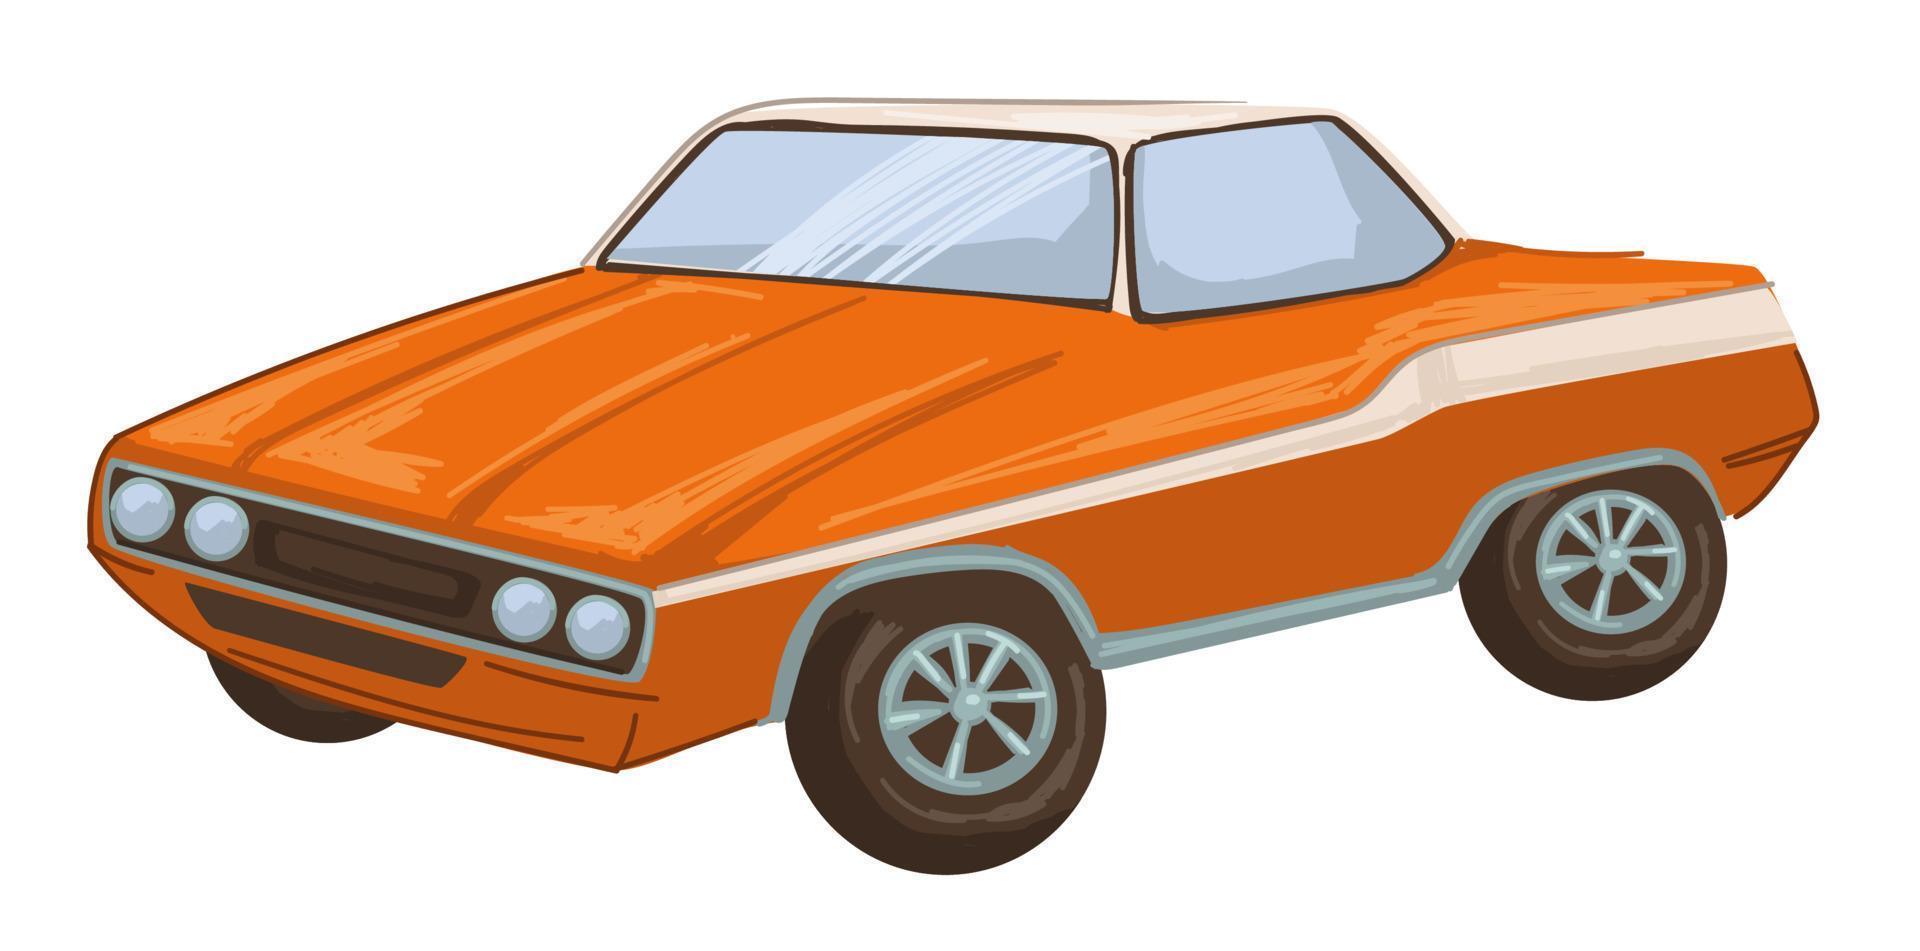 coche retro vintage de la década de 1970, transporte de la vieja escuela vector